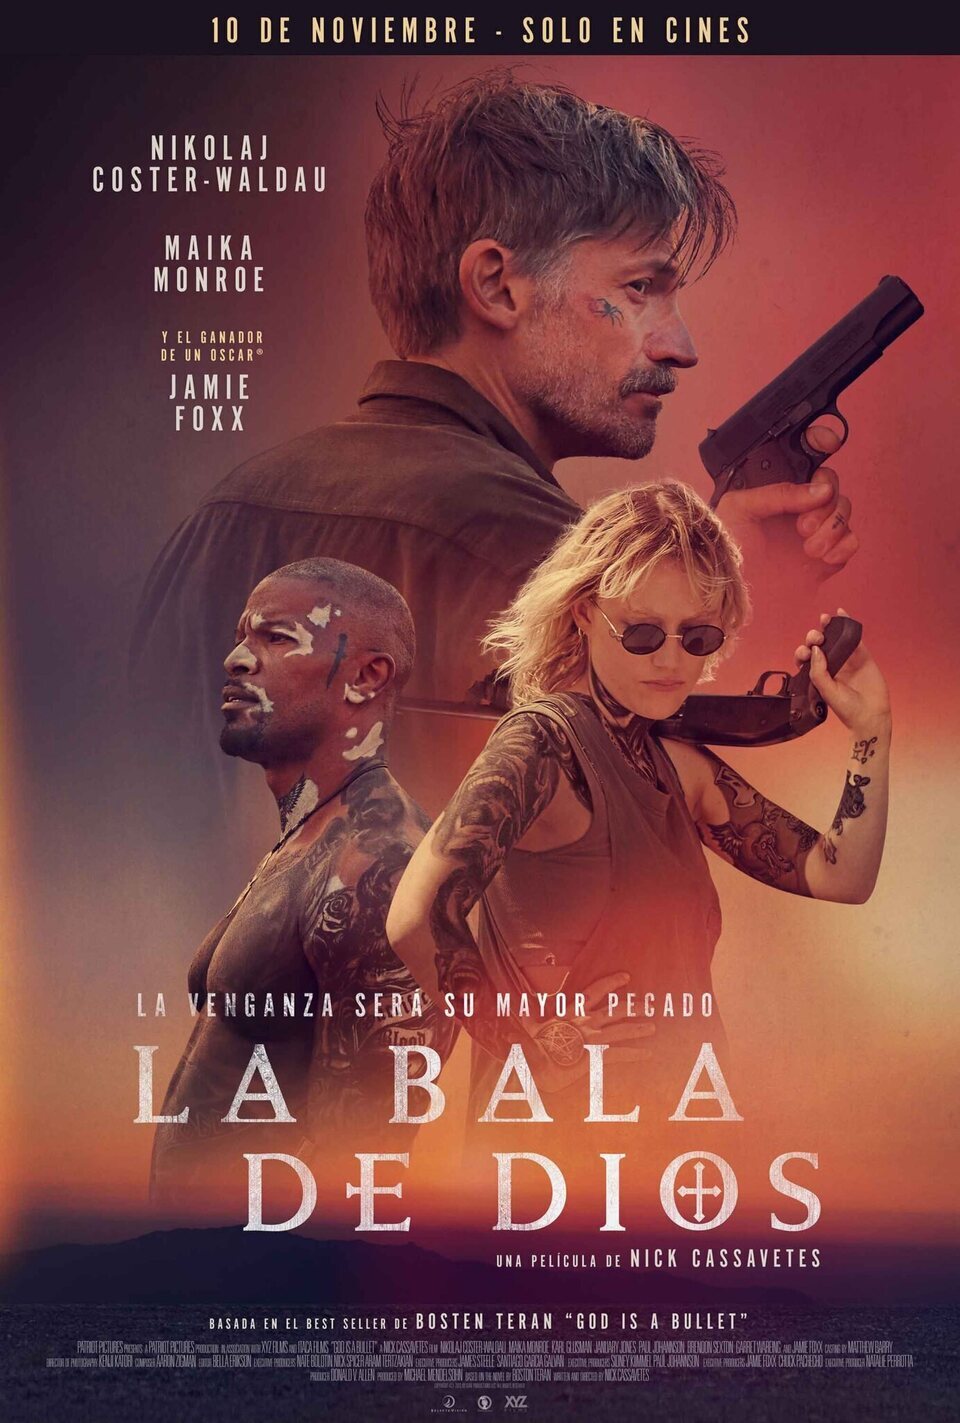 Poster of God Is a Bullet - Cartel España 'La bala de dios'